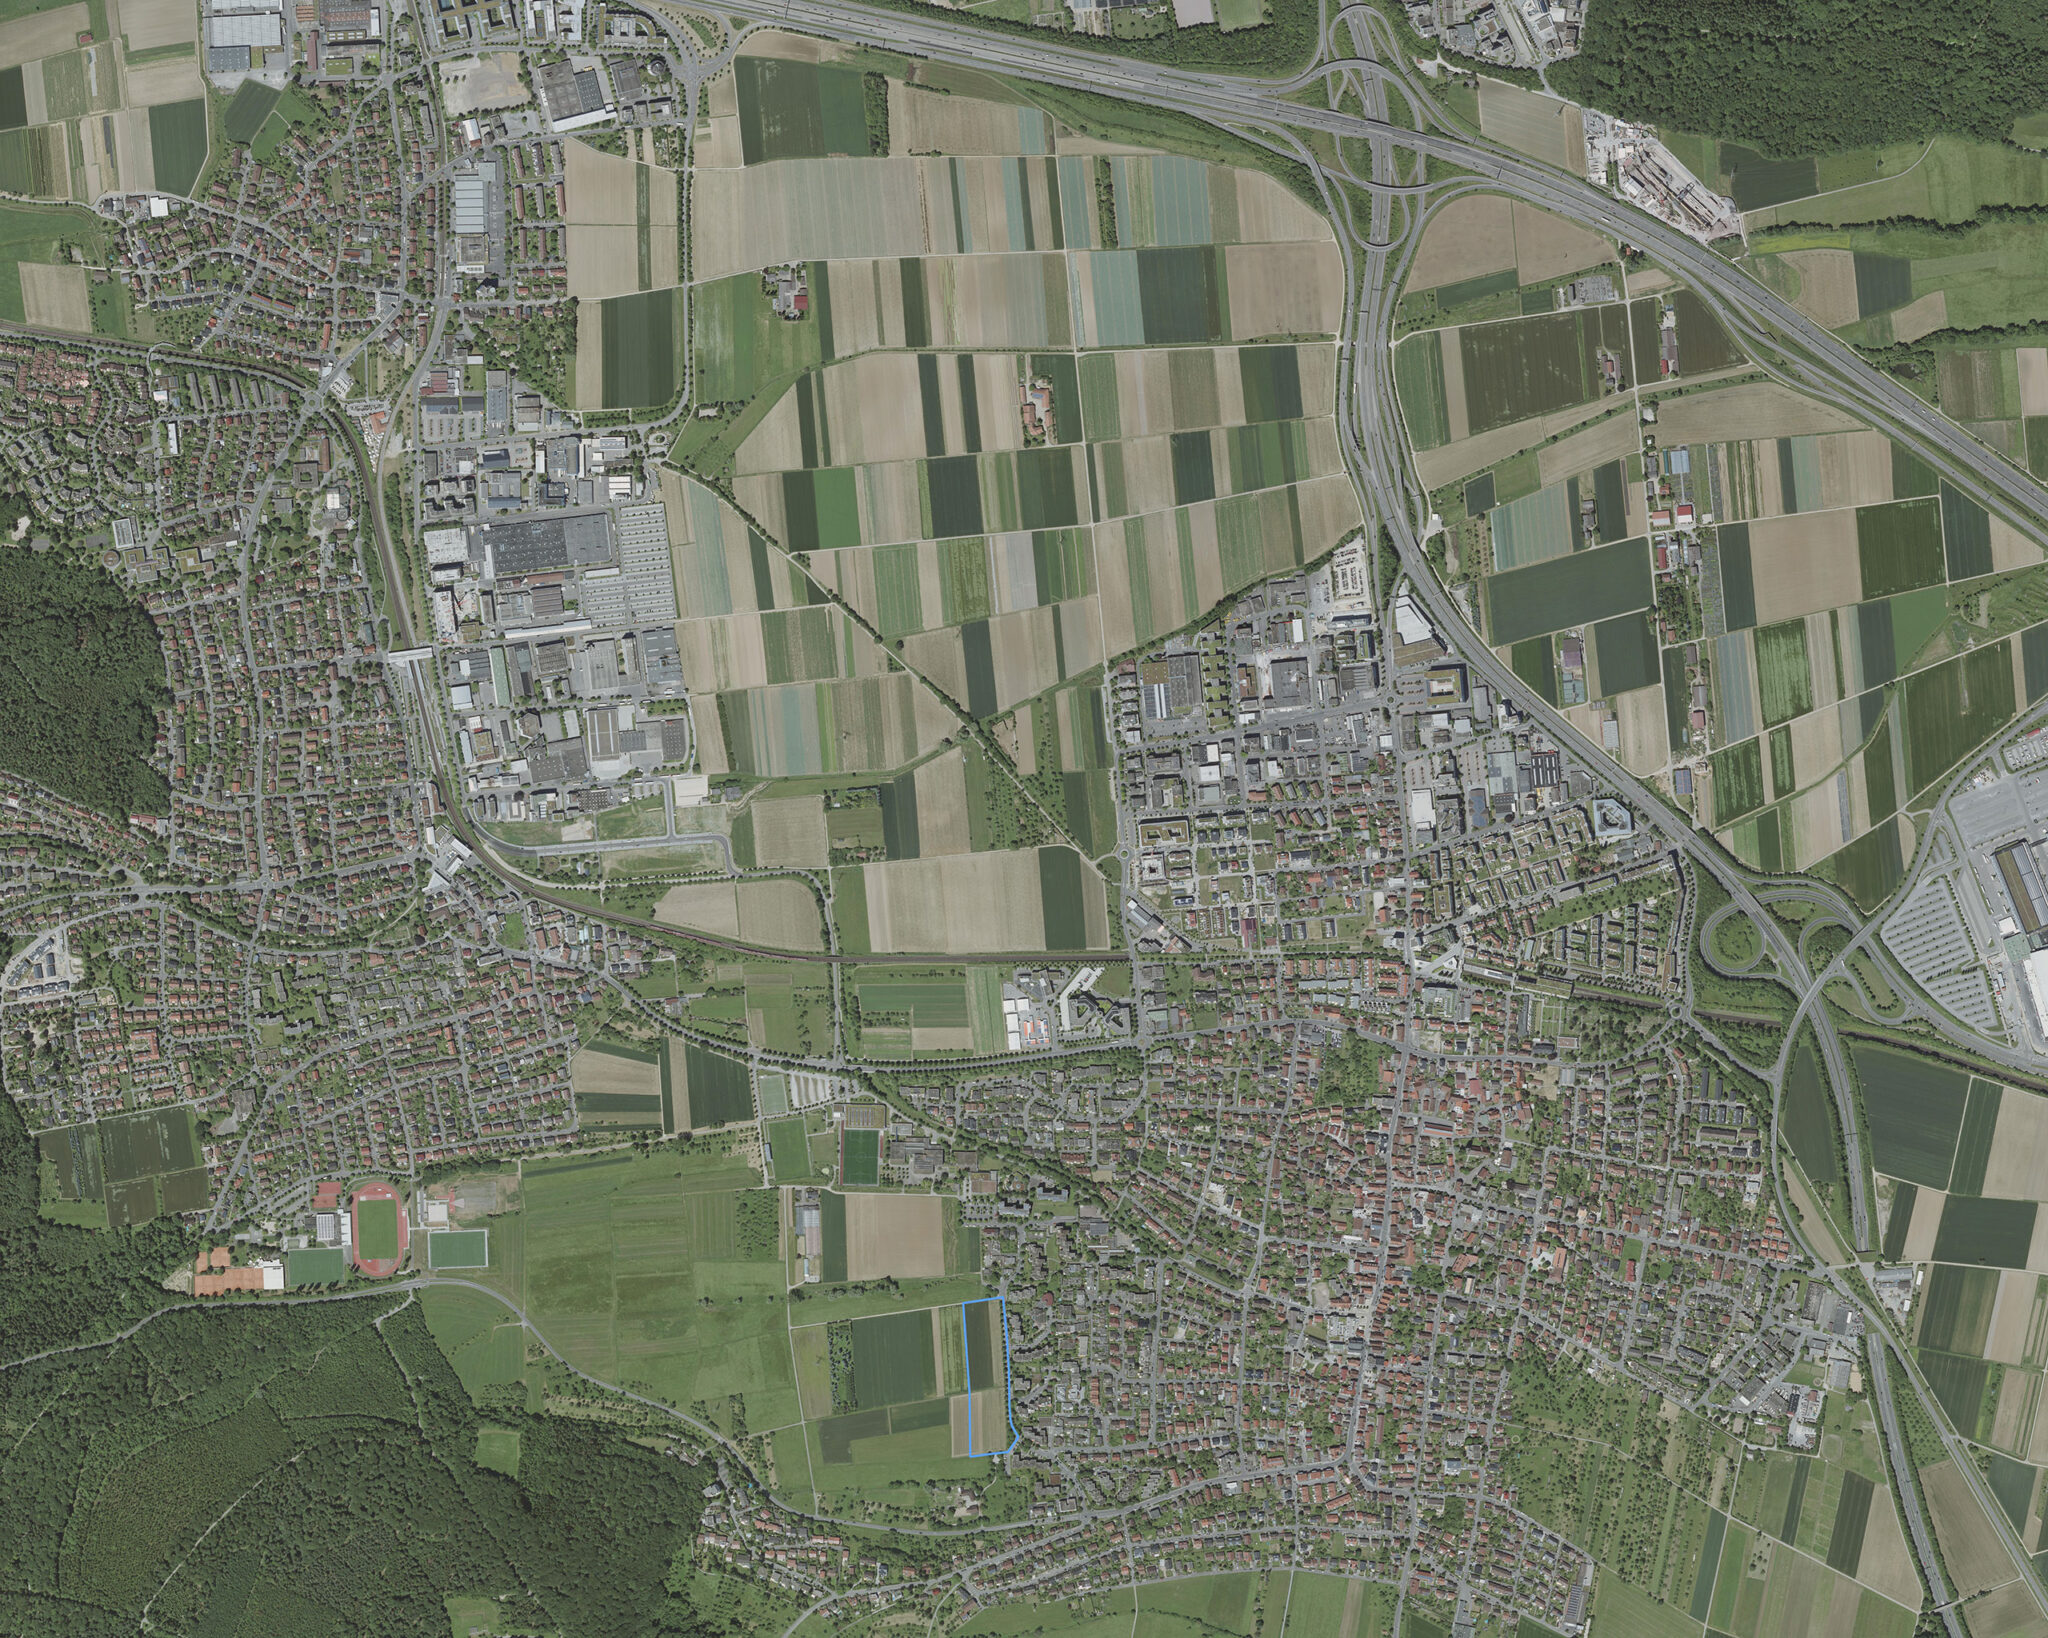 Luftbild des Projektgeländes. Bild: Geobasisdaten LGL, www.lgl-bw.de